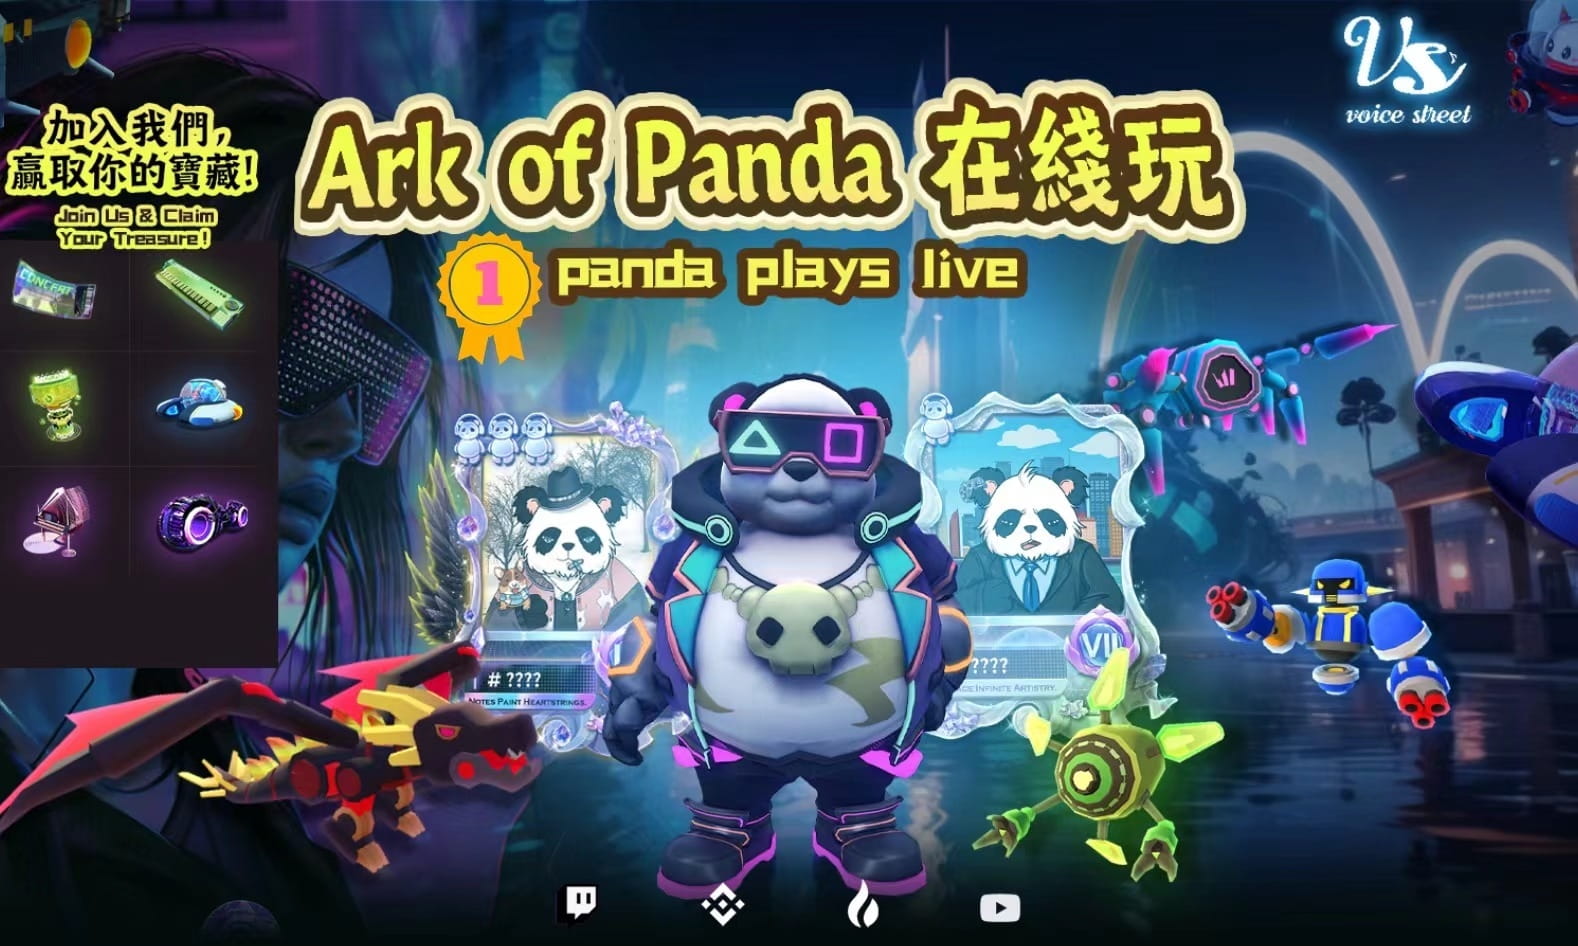 Ark of Panda（DPGU） plays live